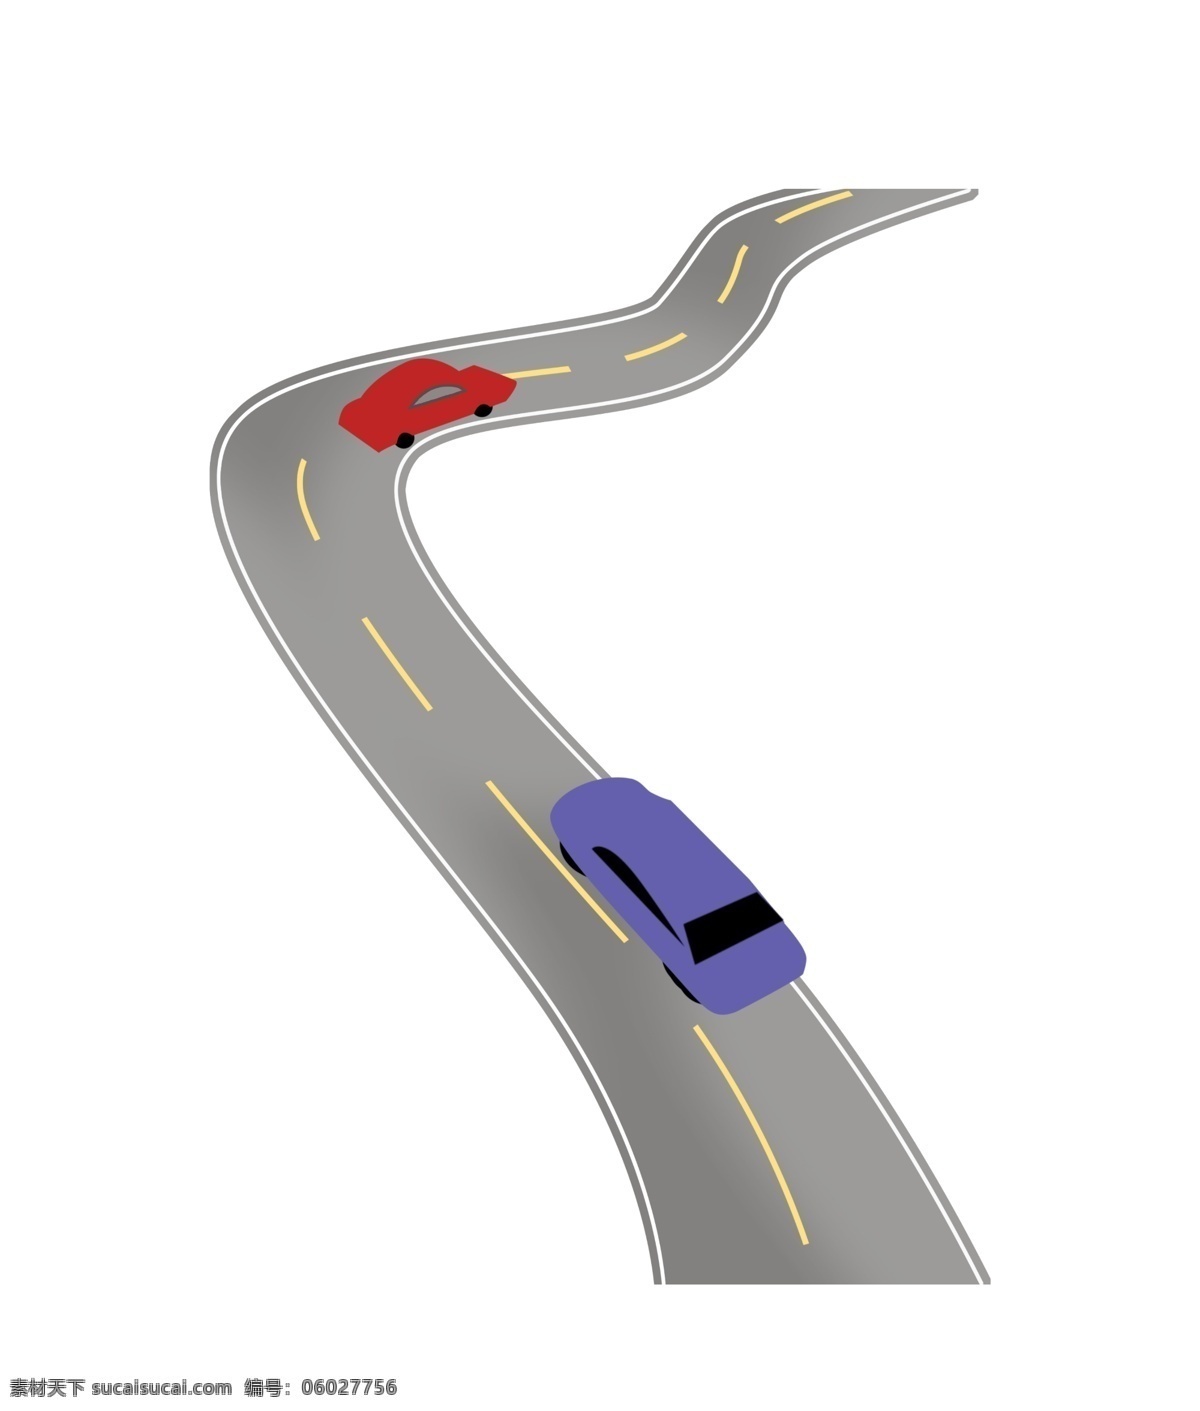 弯曲 柏油 马路 插图 一条马路 马路插图 弯曲的马路 柏油马路插图 公路 高速公路 蓝色汽车 红色汽车